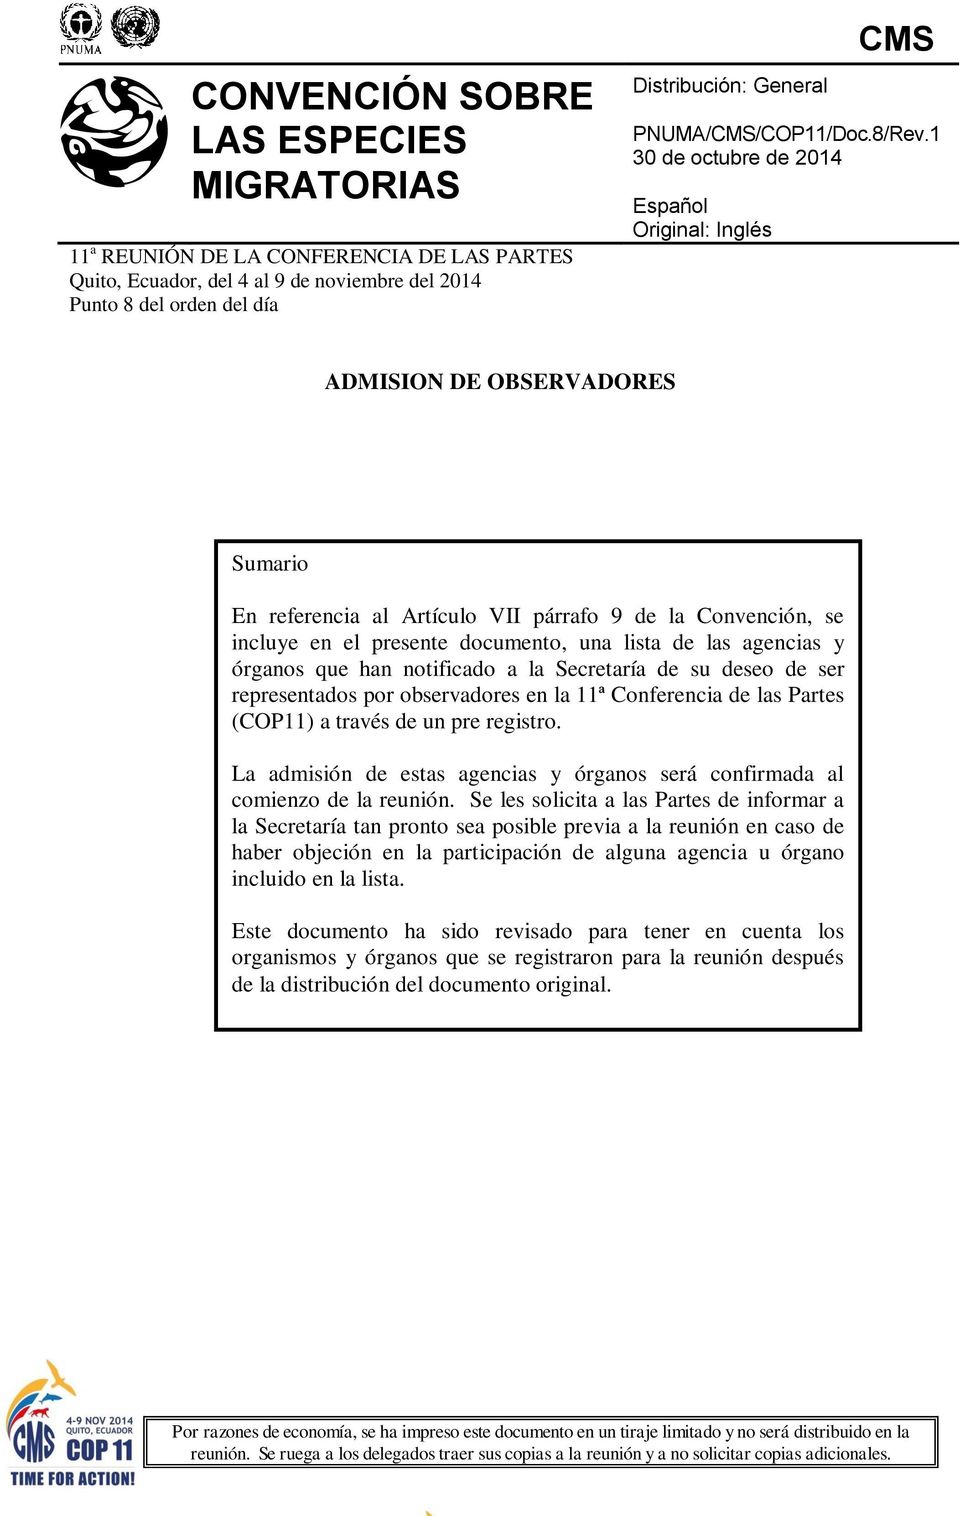 1 30 de octubre de 2014 Español Original: Inglés ADMISION DE OBSERVADORES Sumario En referencia al Artículo VII párrafo 9 de la Convención, se incluye en el presente documento, una lista de las